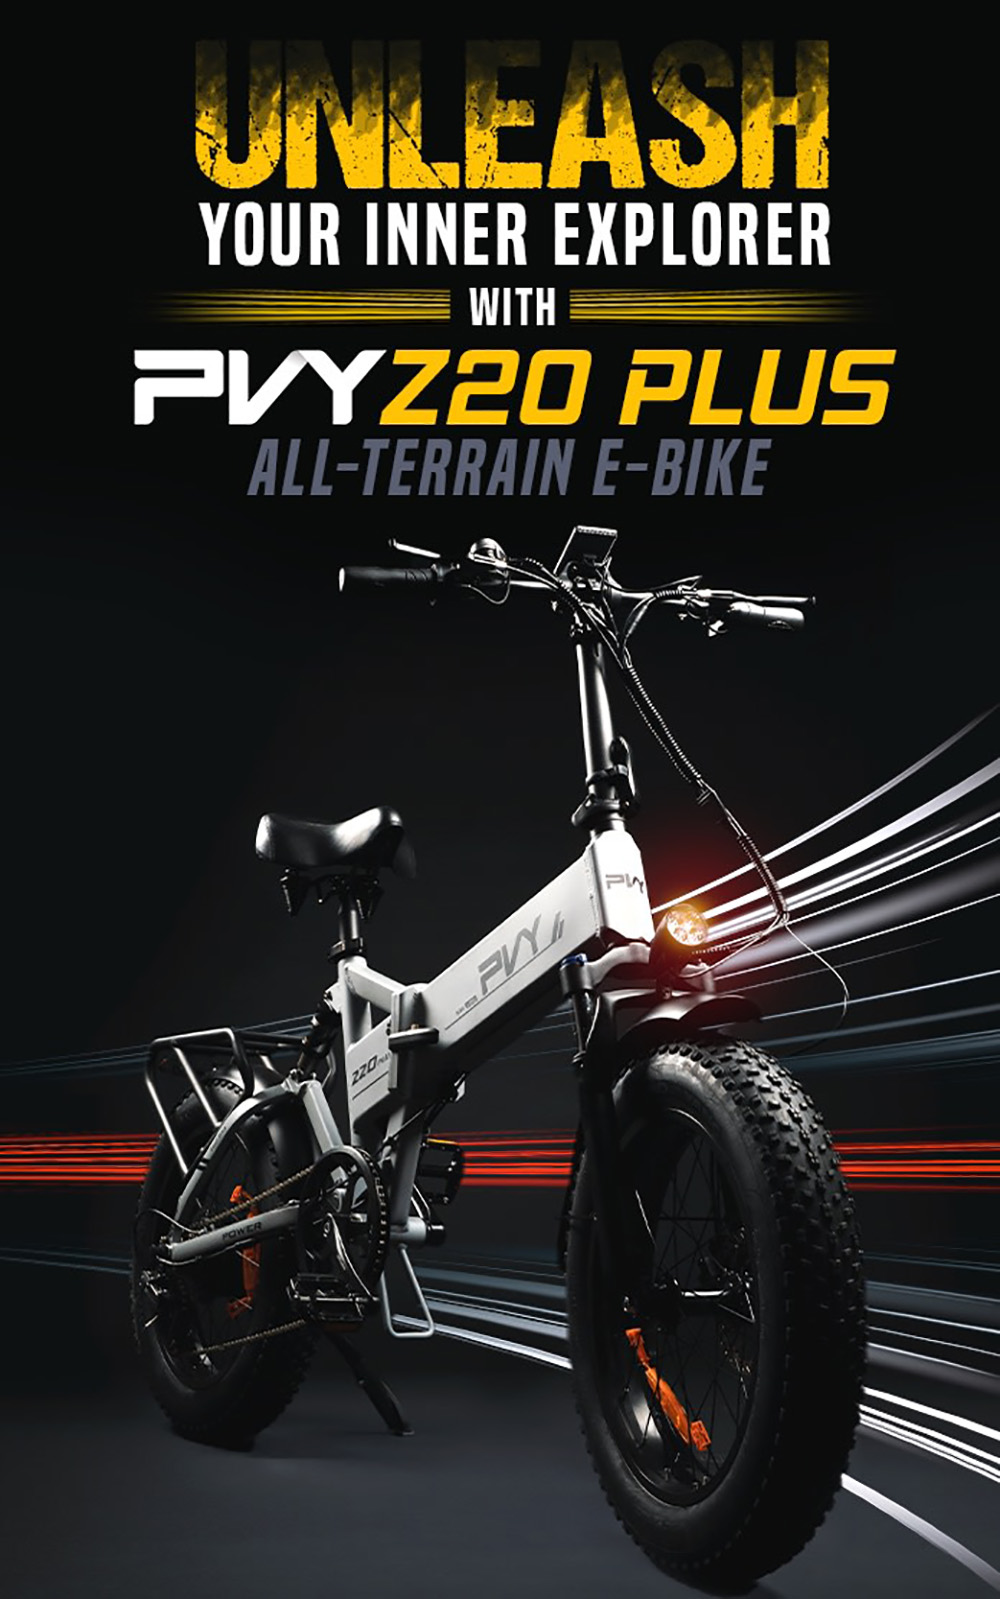 PVY Z20 Plus E-Bike 20 inch Tires 48V 1000W 16.5Ah Speed u200bu200b50km/h Gray